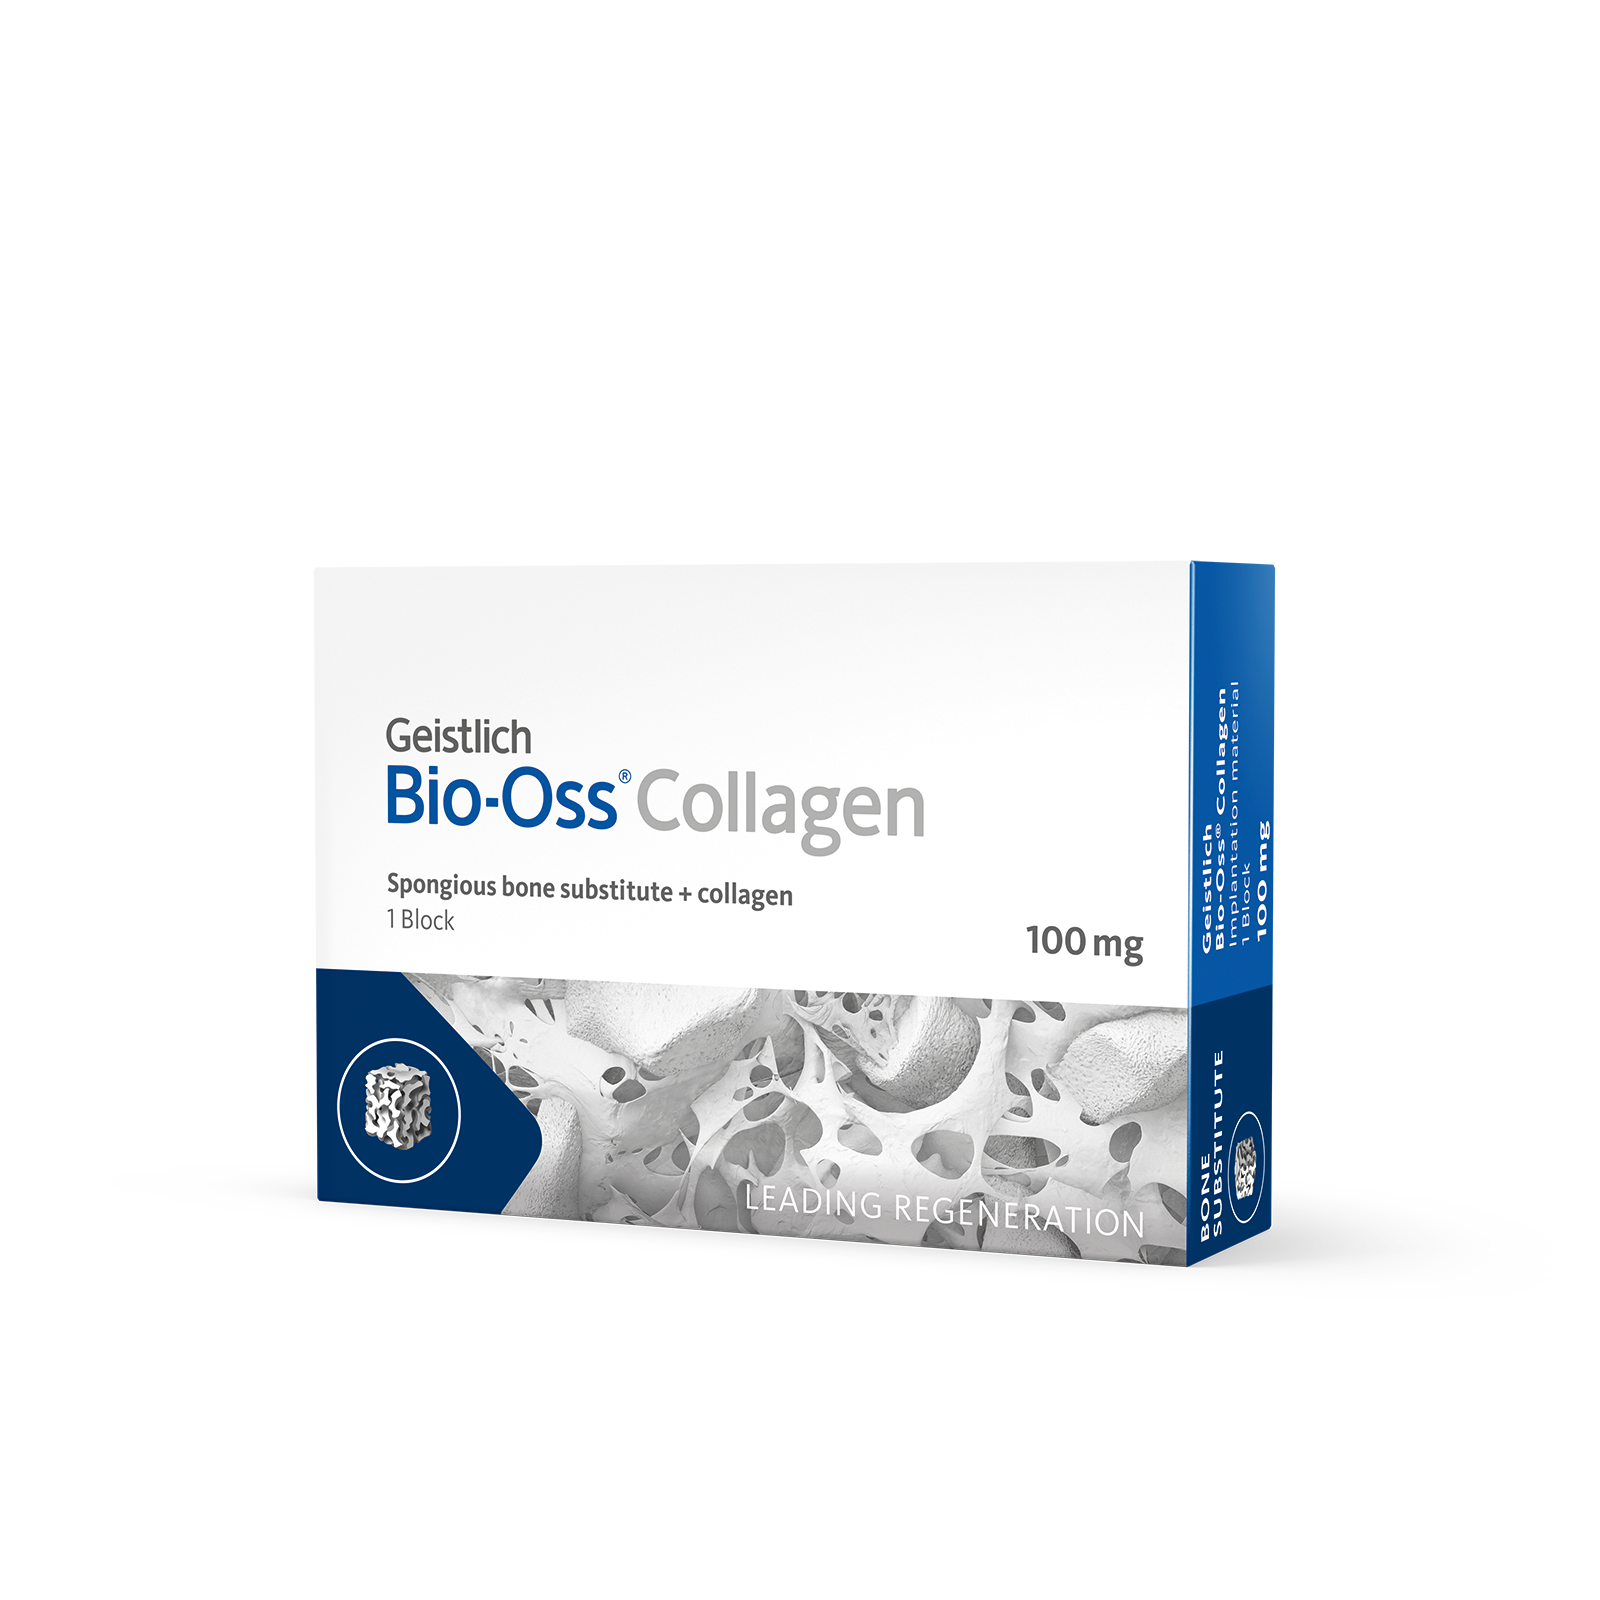 Biomaterials Geistlich Bio-Oss Collagen